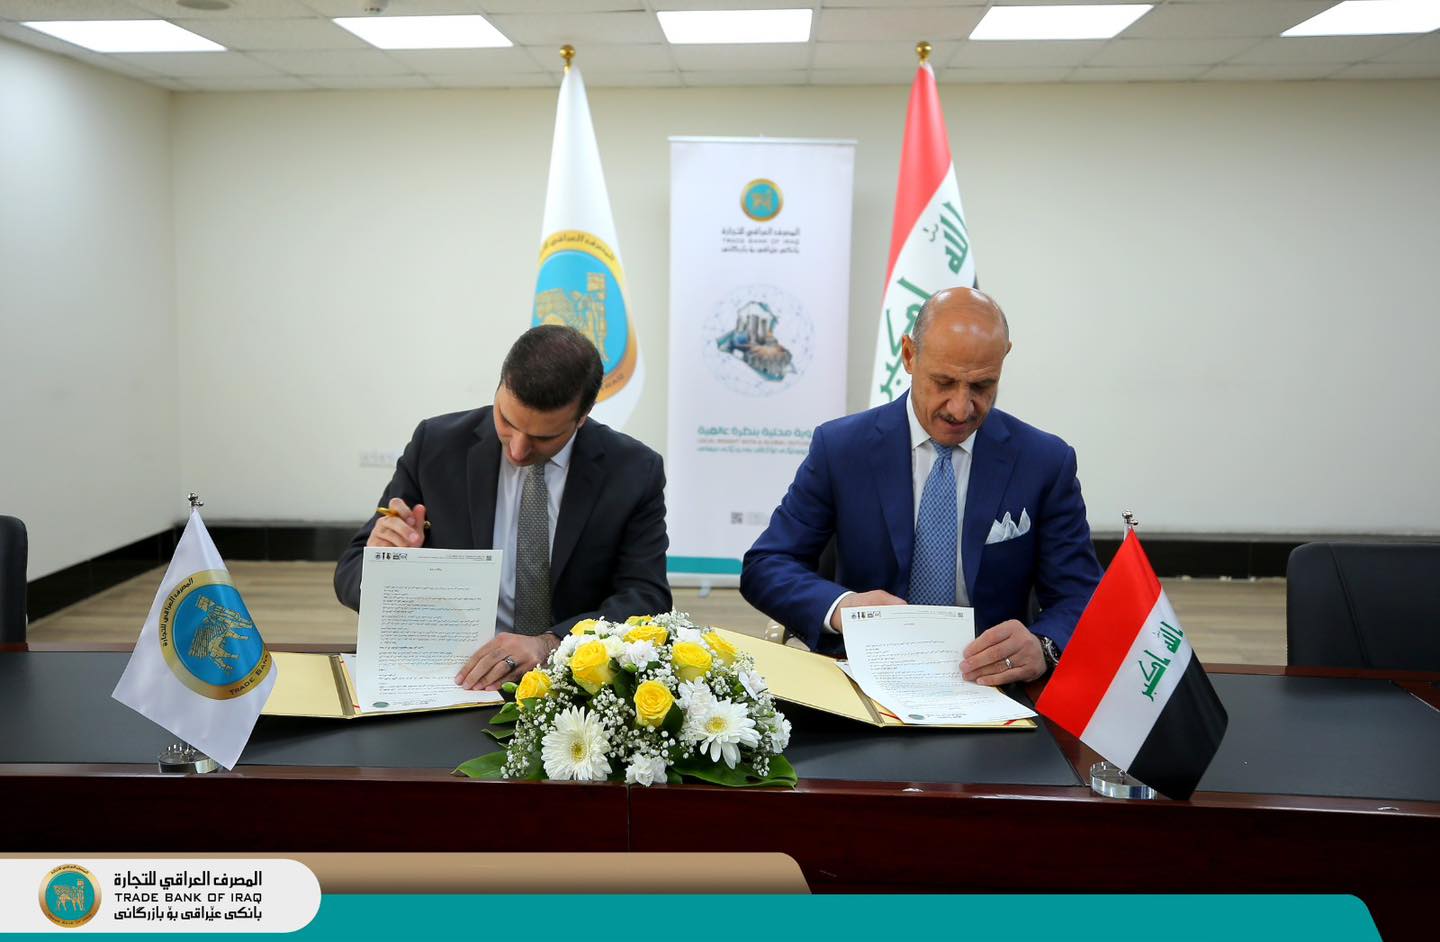 المصرف العراقي للتجارة والاتحاد العراقي لكرة القدم يوقعان اتفاقية لرعاية منتخباتنا الوطنية